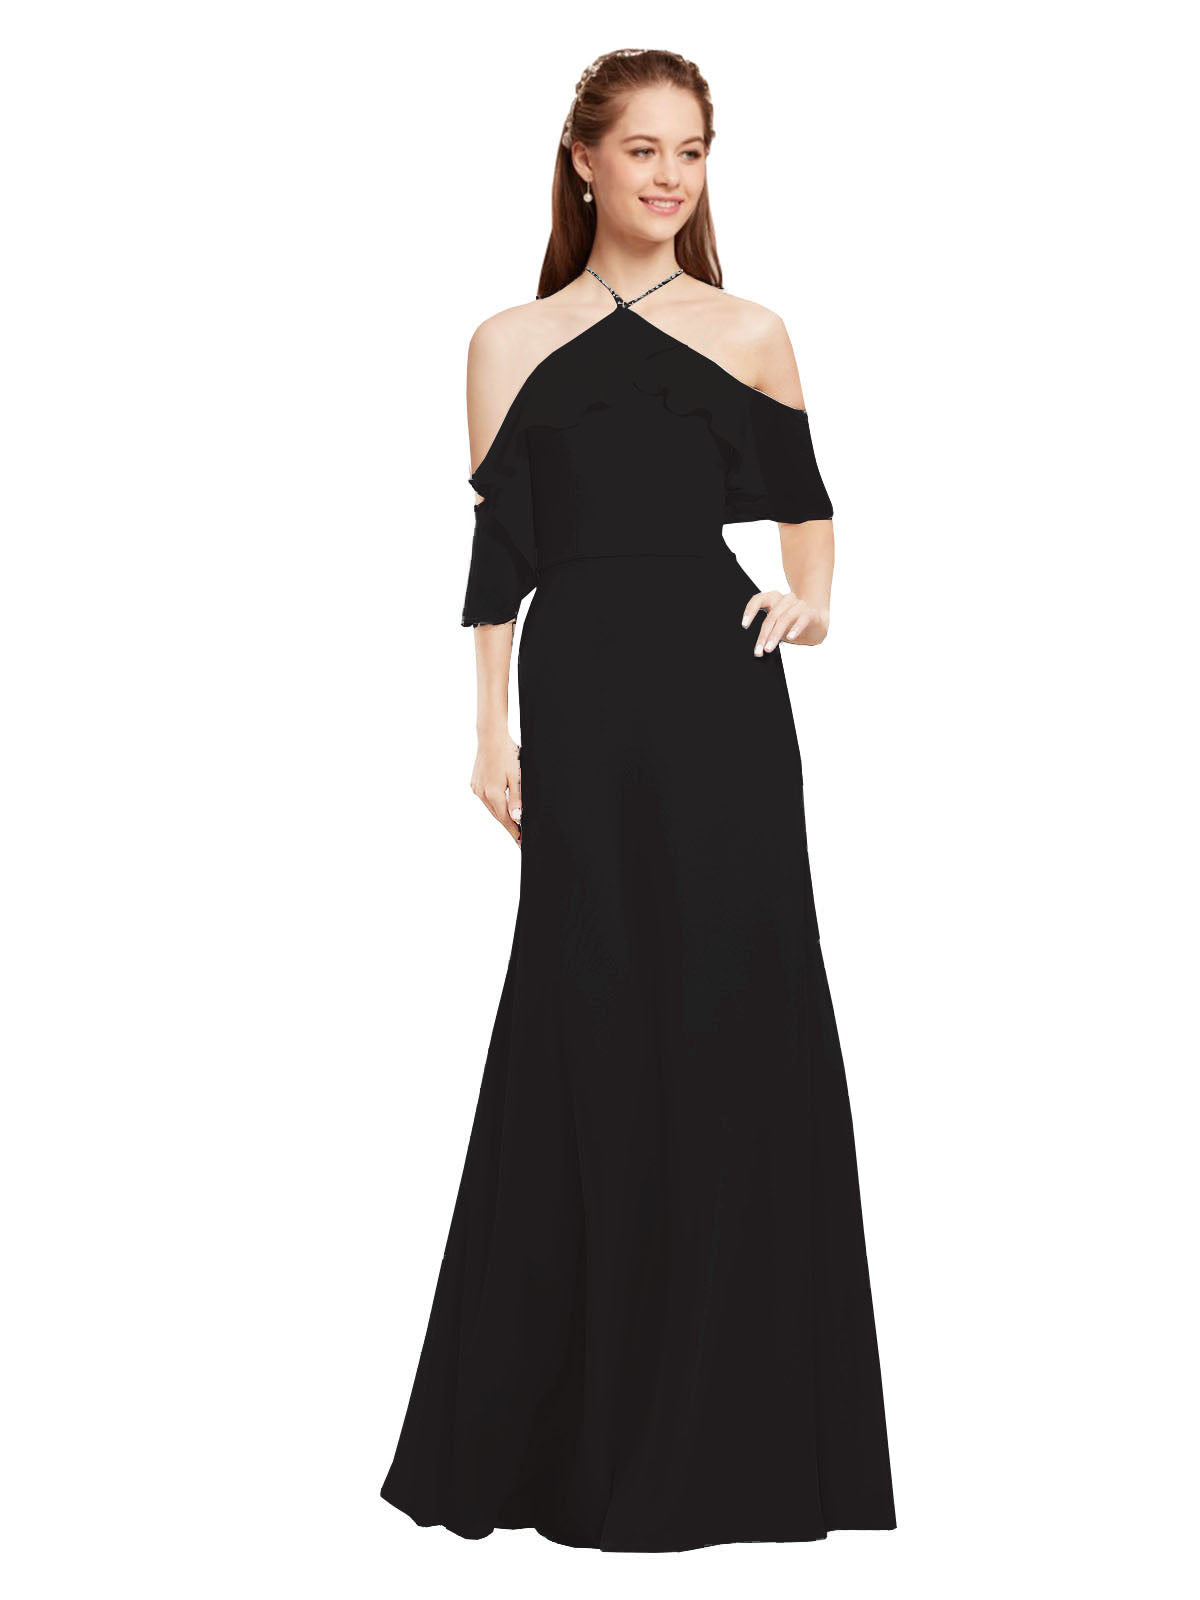 Black A-Line Halter Cold Shoulder Long Bridesmaid Dress Glain